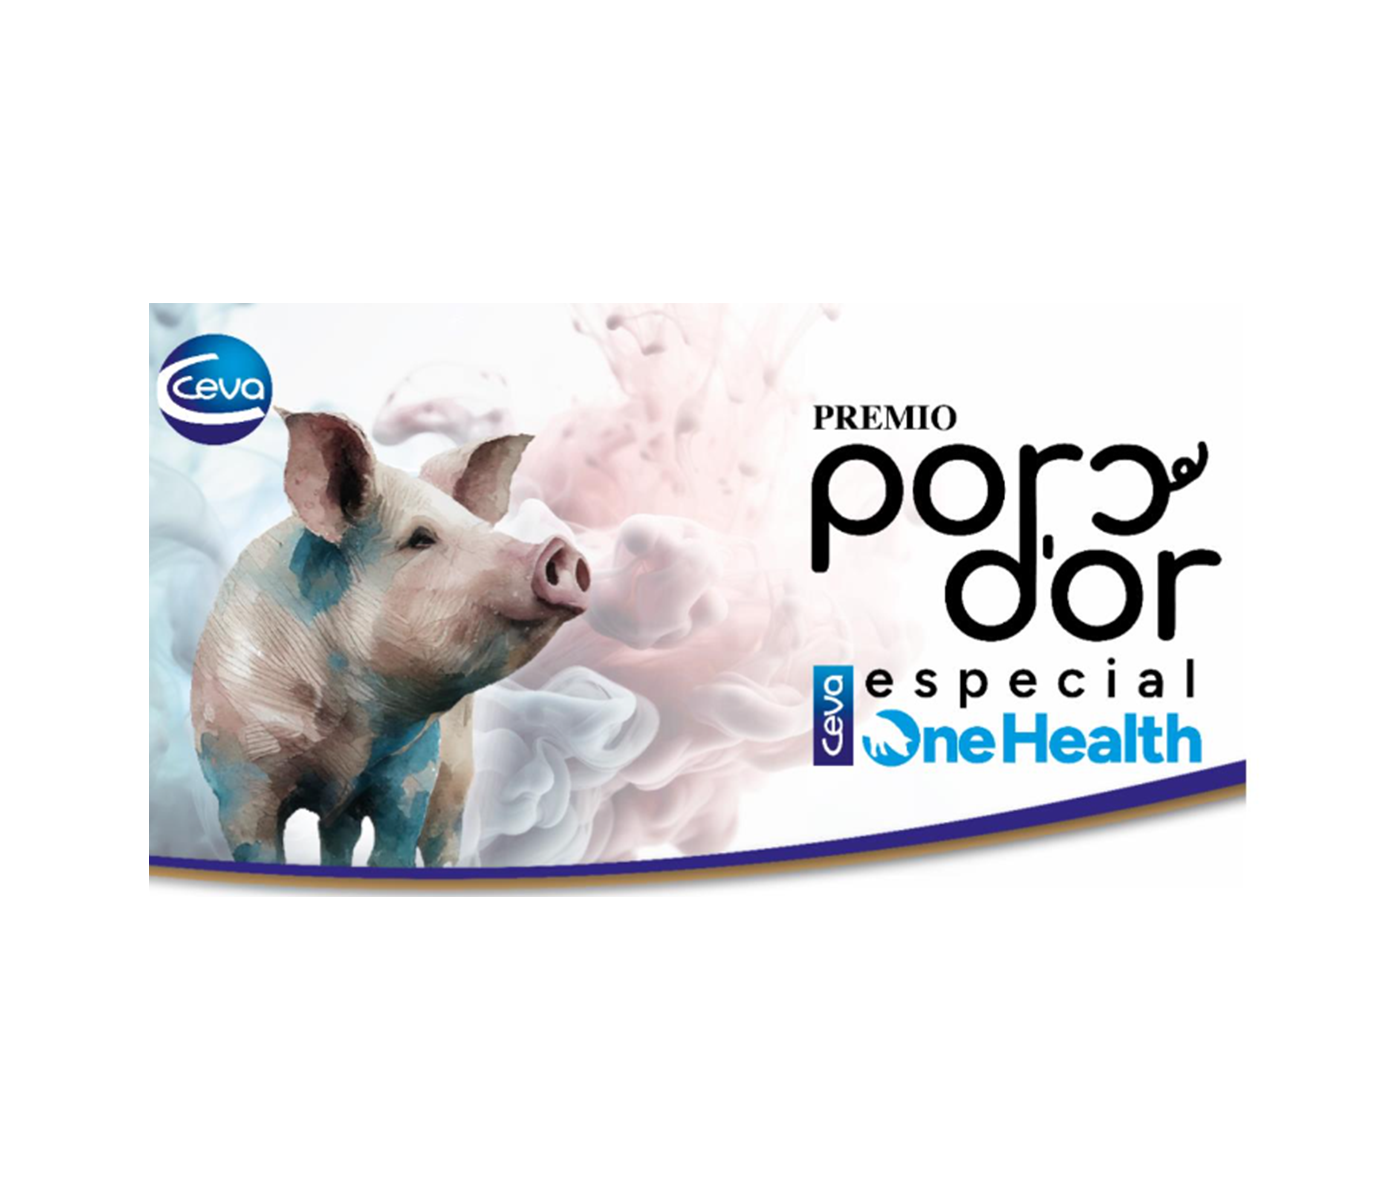 Convocado el Premio Especial One Health que Ceva Salud Animal entregará en los Porc d’Or Capa Blanca